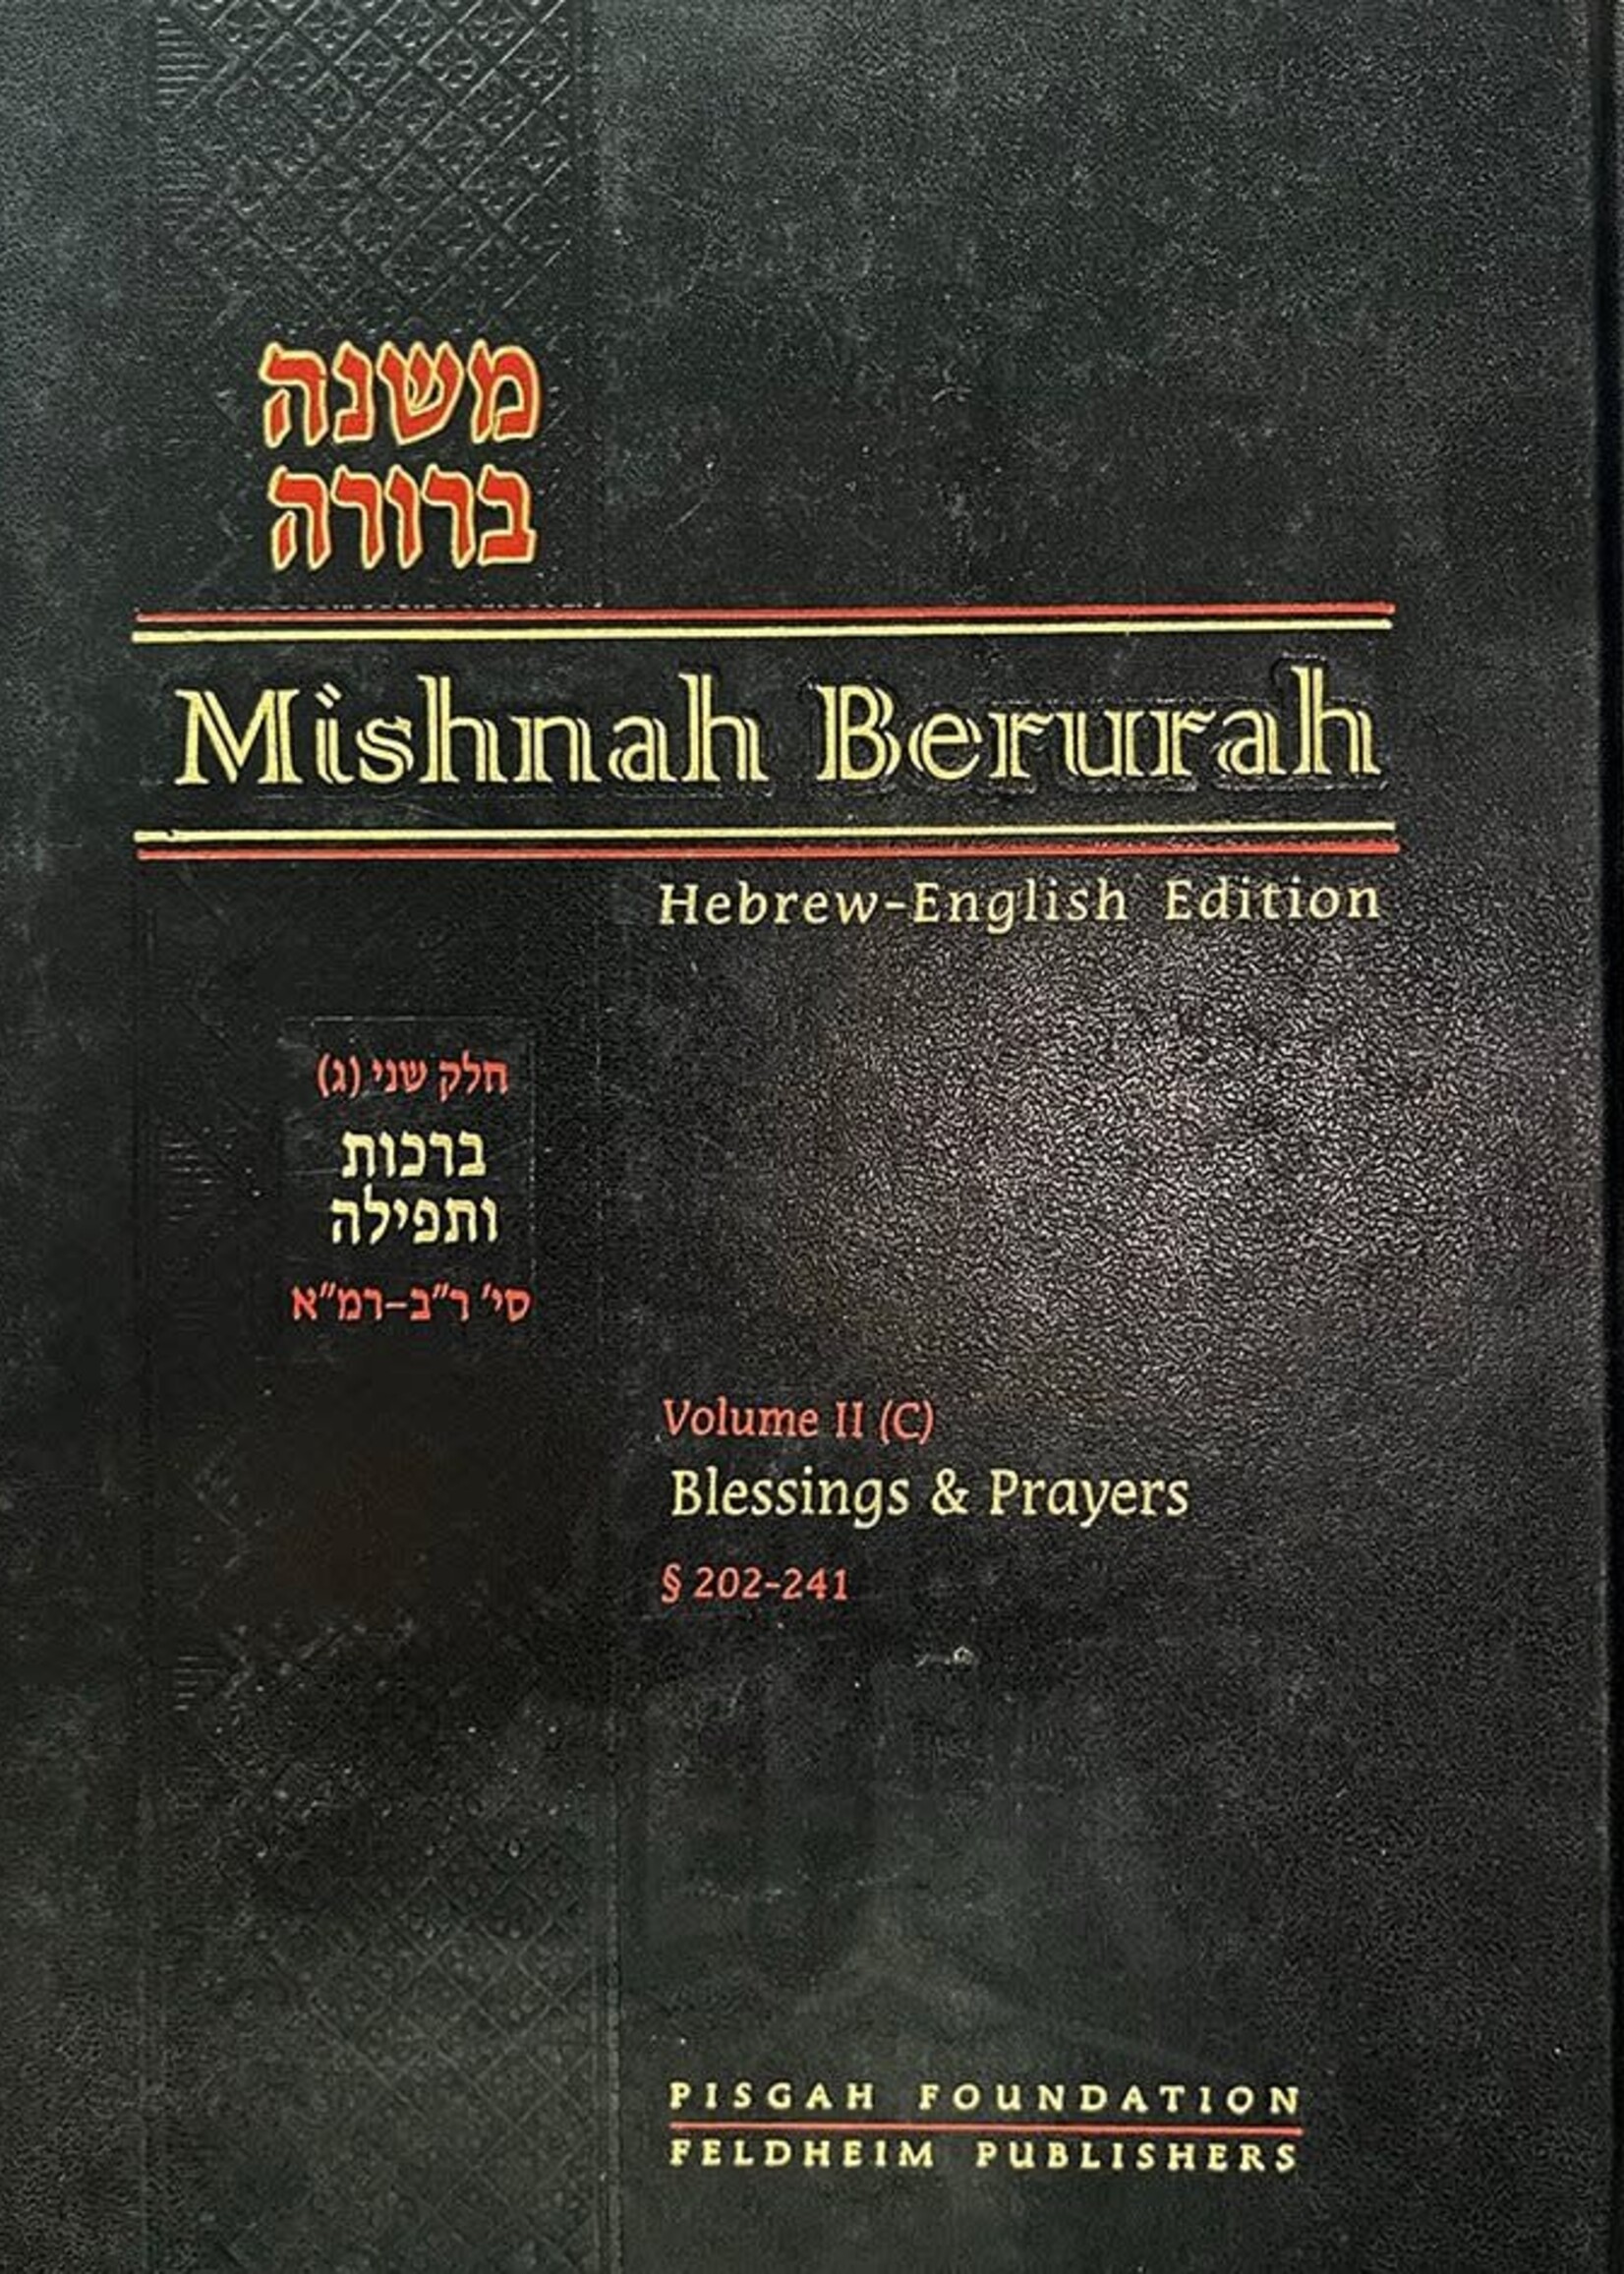 Mishnah Berurah - English/Hebrew #7 (vol. #2C - Large Size)